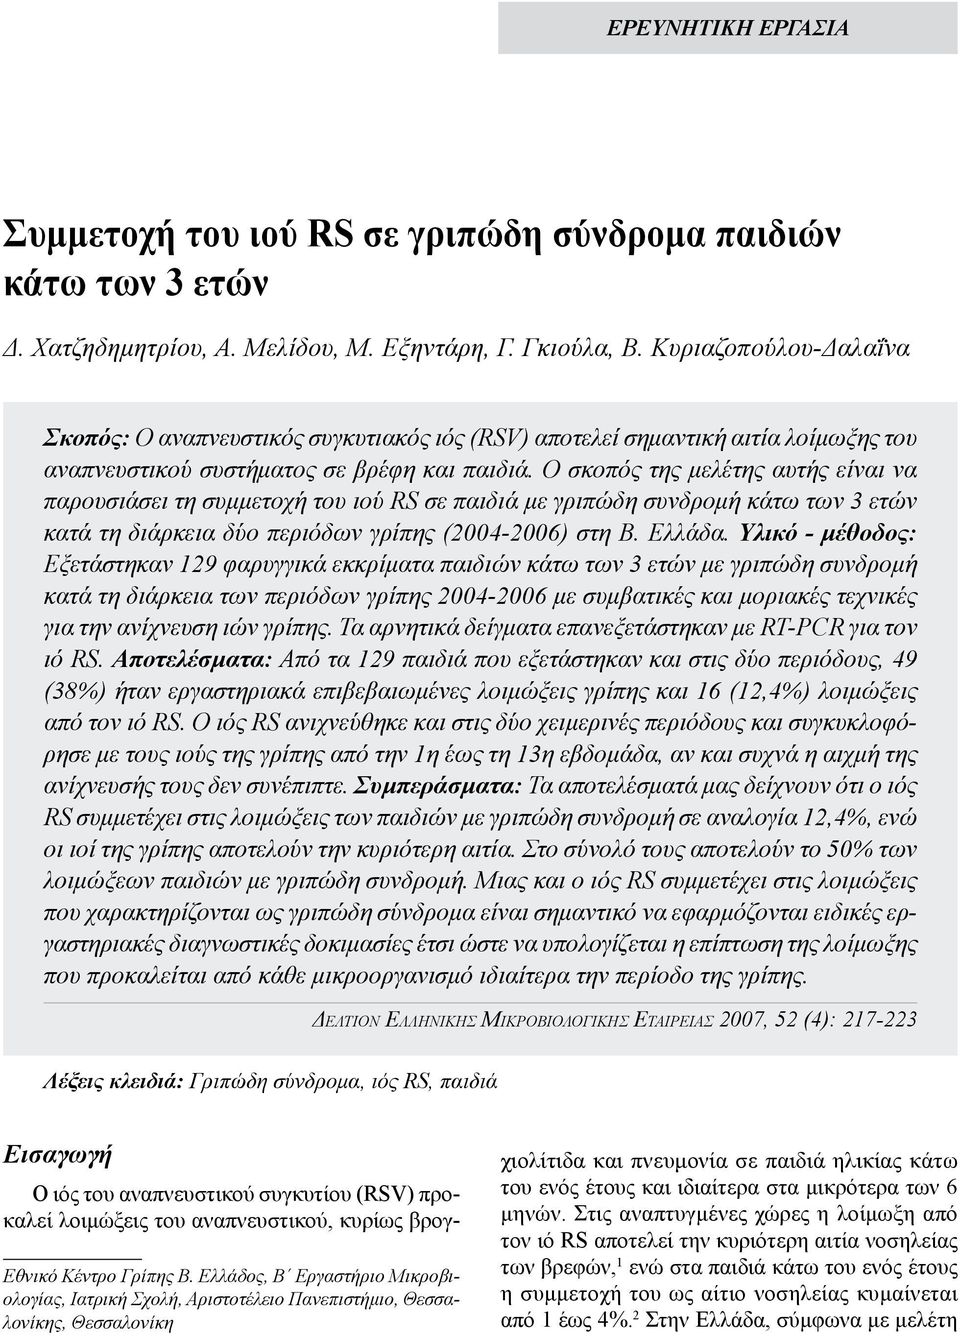 Ο σκοπός της μελέτης αυτής είναι να παρουσιάσει τη συμμετοχή του ιού RS σε παιδιά με γριπώδη συνδρομή κάτω των 3 ετών κατά τη διάρκεια δύο περιόδων γρίπης (2004-2006) στη Β. Ελλάδα.